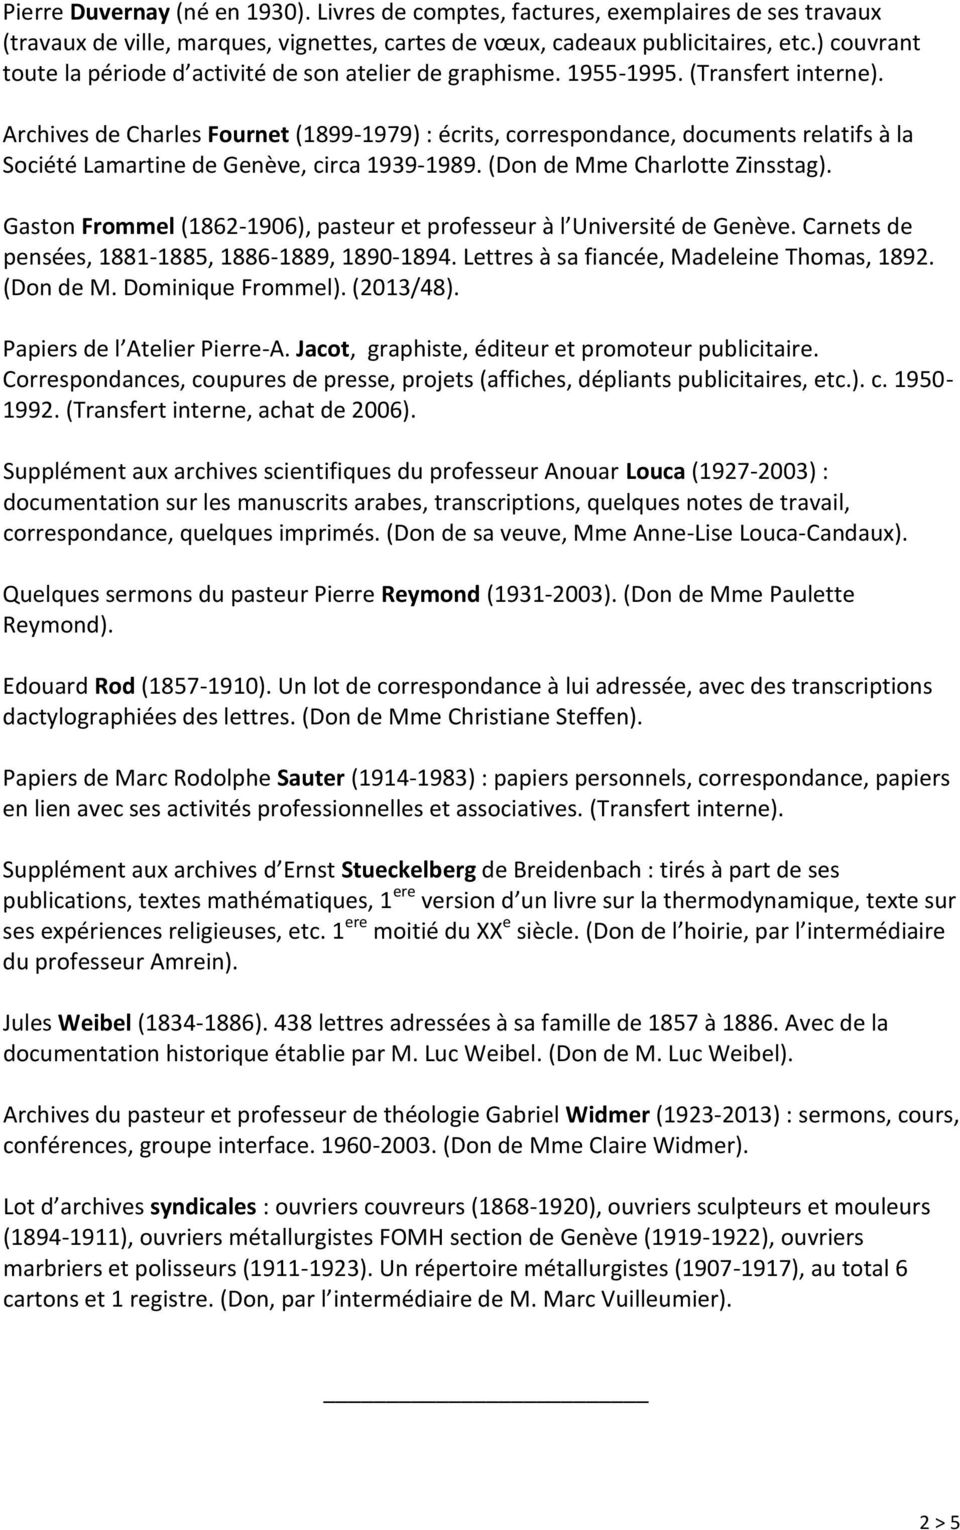 Archives de Charles Fournet (1899-1979) : écrits, correspondance, documents relatifs à la Société Lamartine de Genève, circa 1939-1989. (Don de Mme Charlotte Zinsstag).